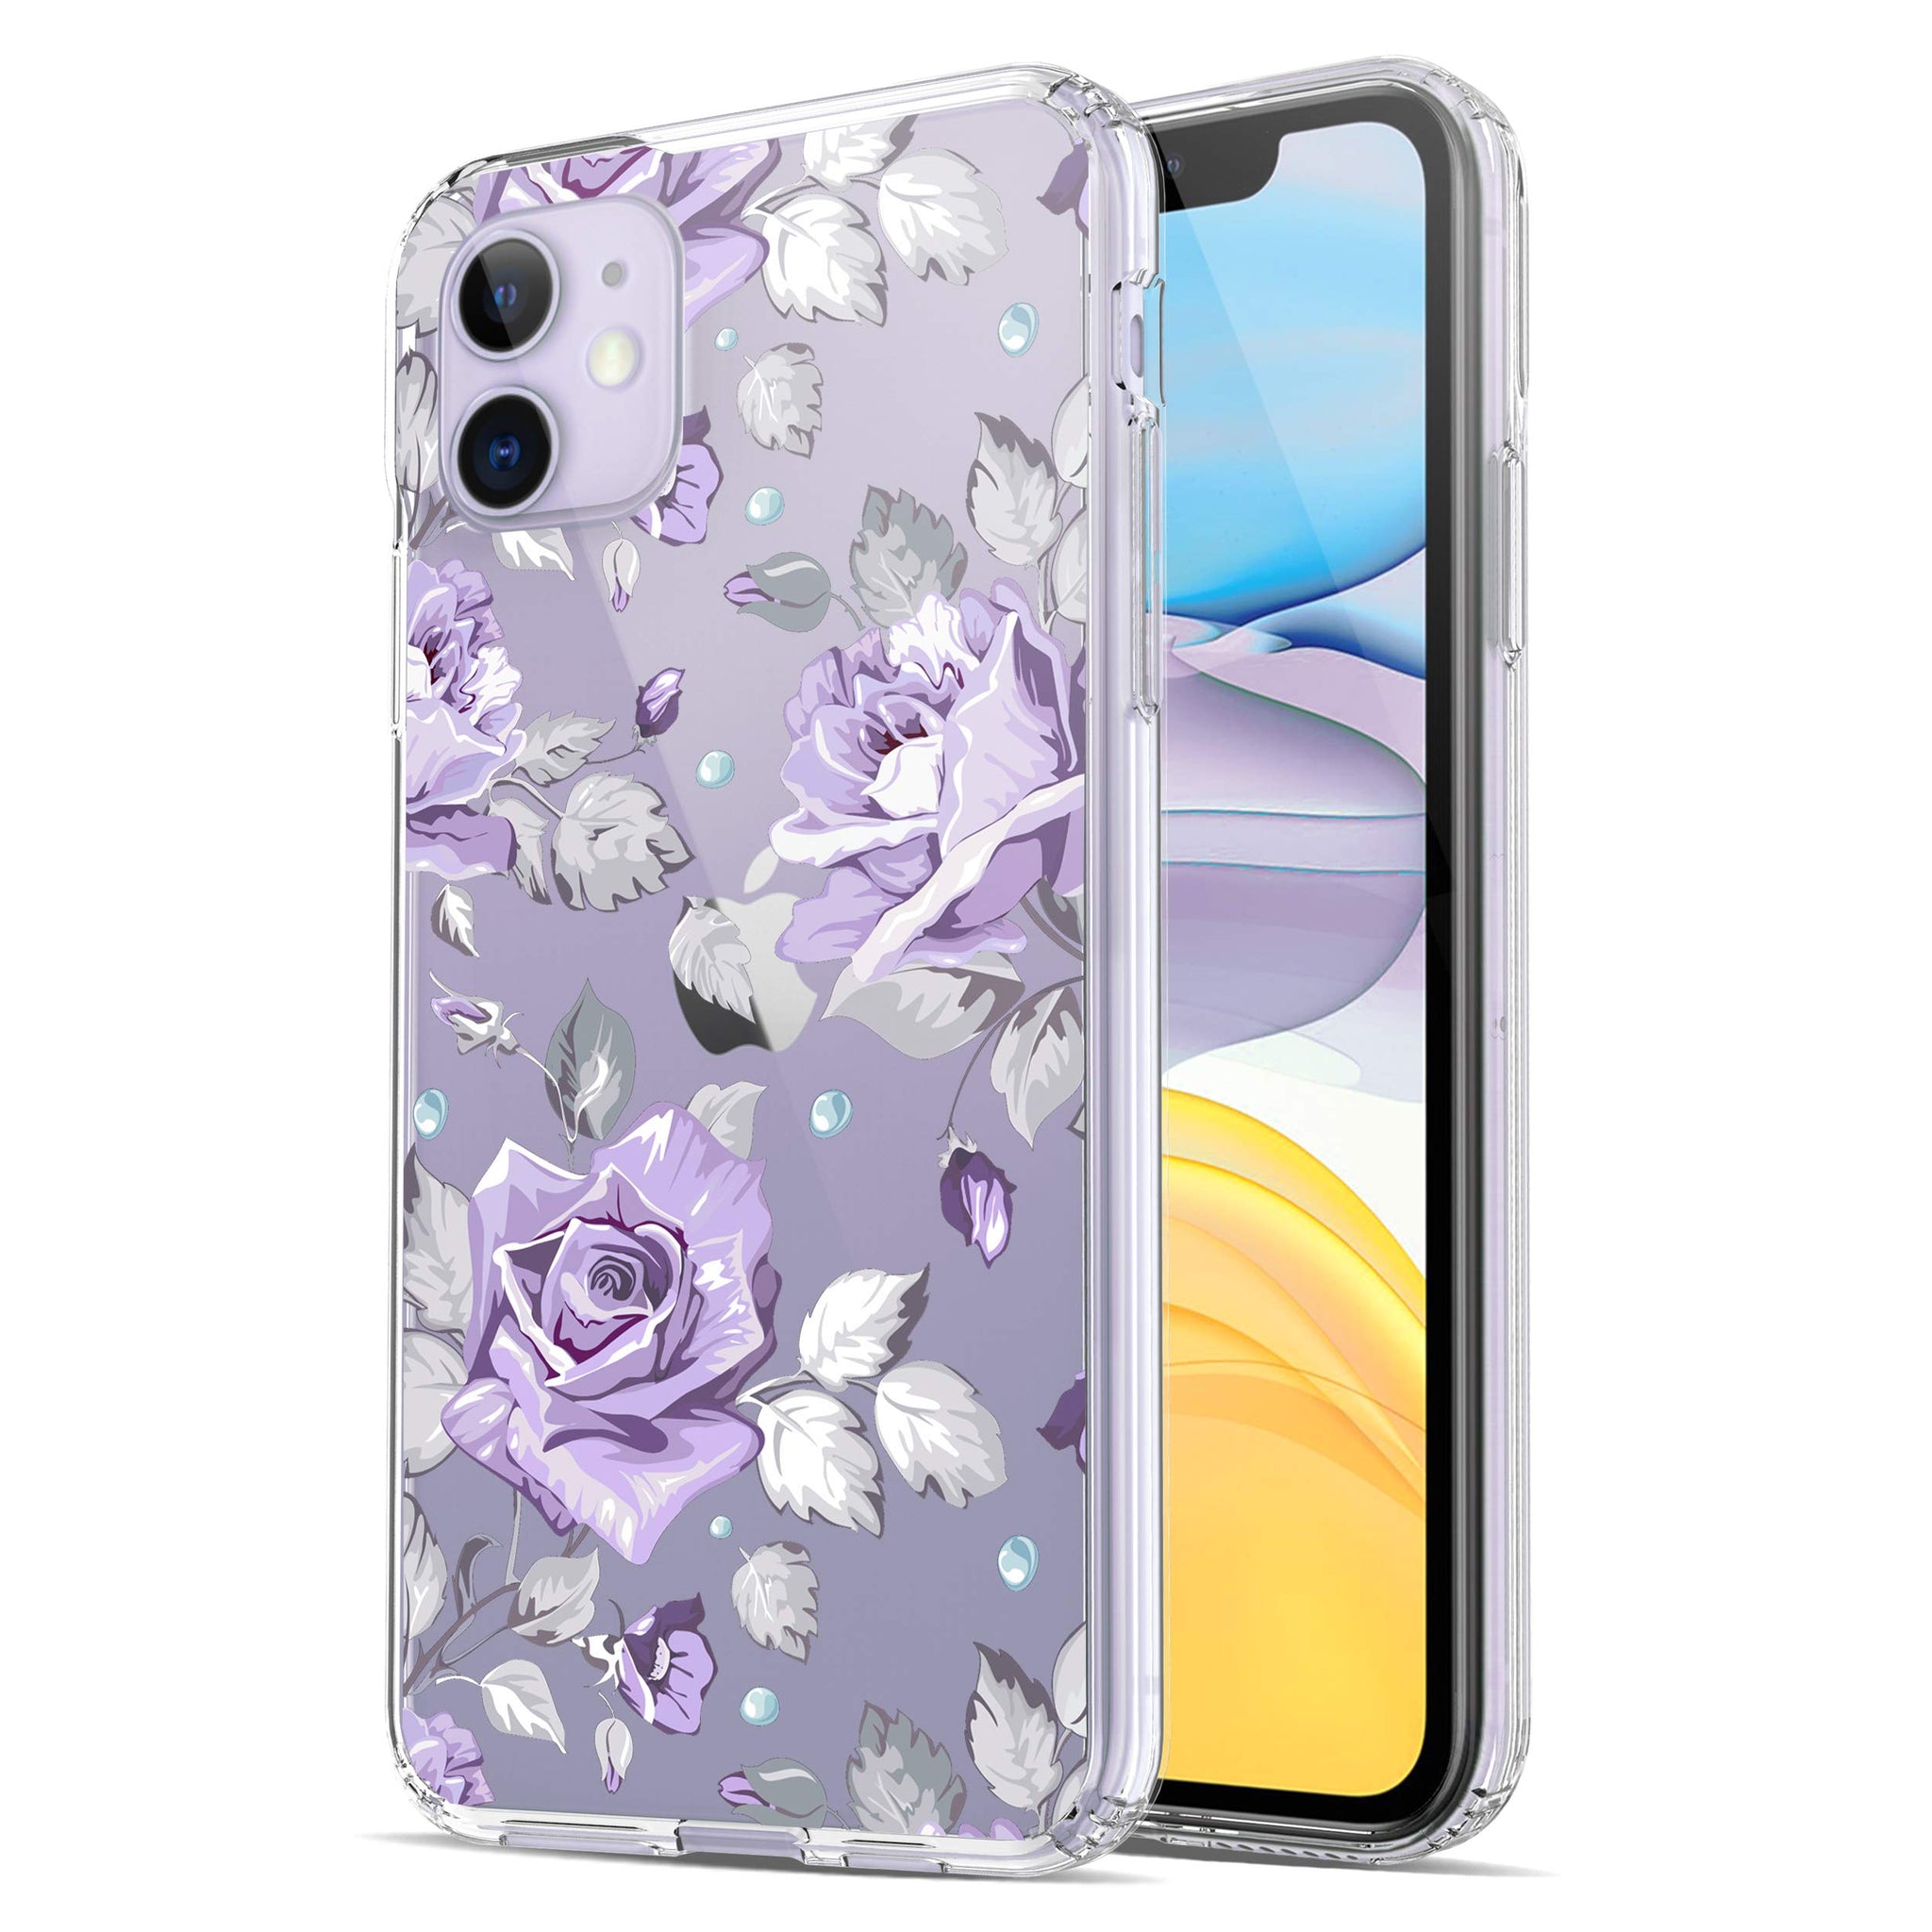 iPhone 11 Case, Anti-Scratch Clear Case - Purple Rose Floral